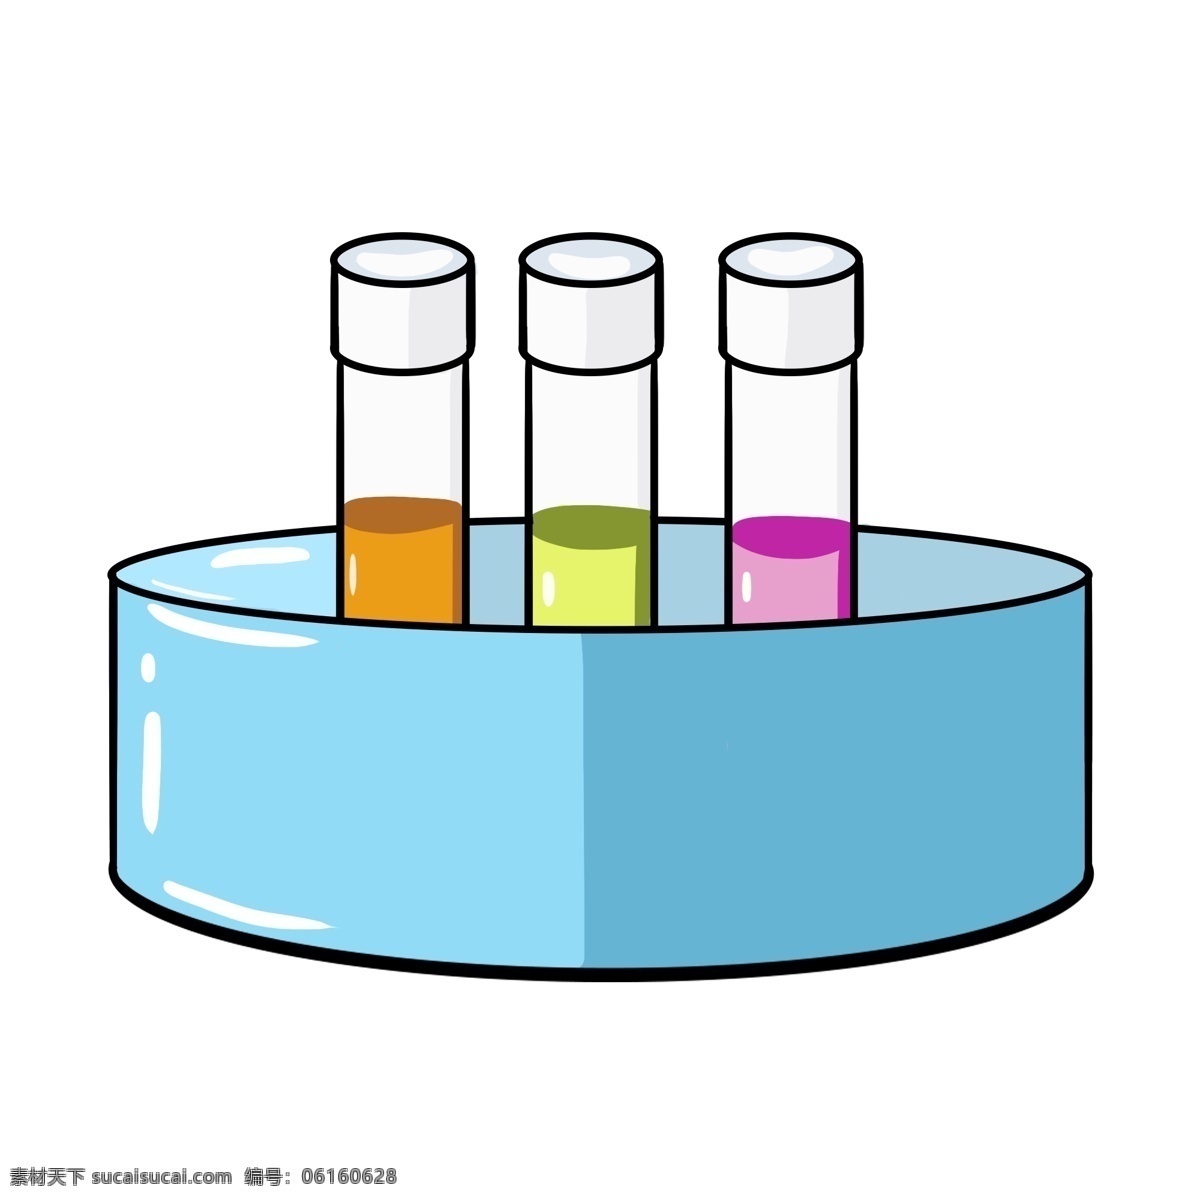 蓝色 盒装 化学 用品 插图 棕色药水 粉色药水 黄色药水 蓝色盒子 化学教育 科学实验 化学课 化学实验用品